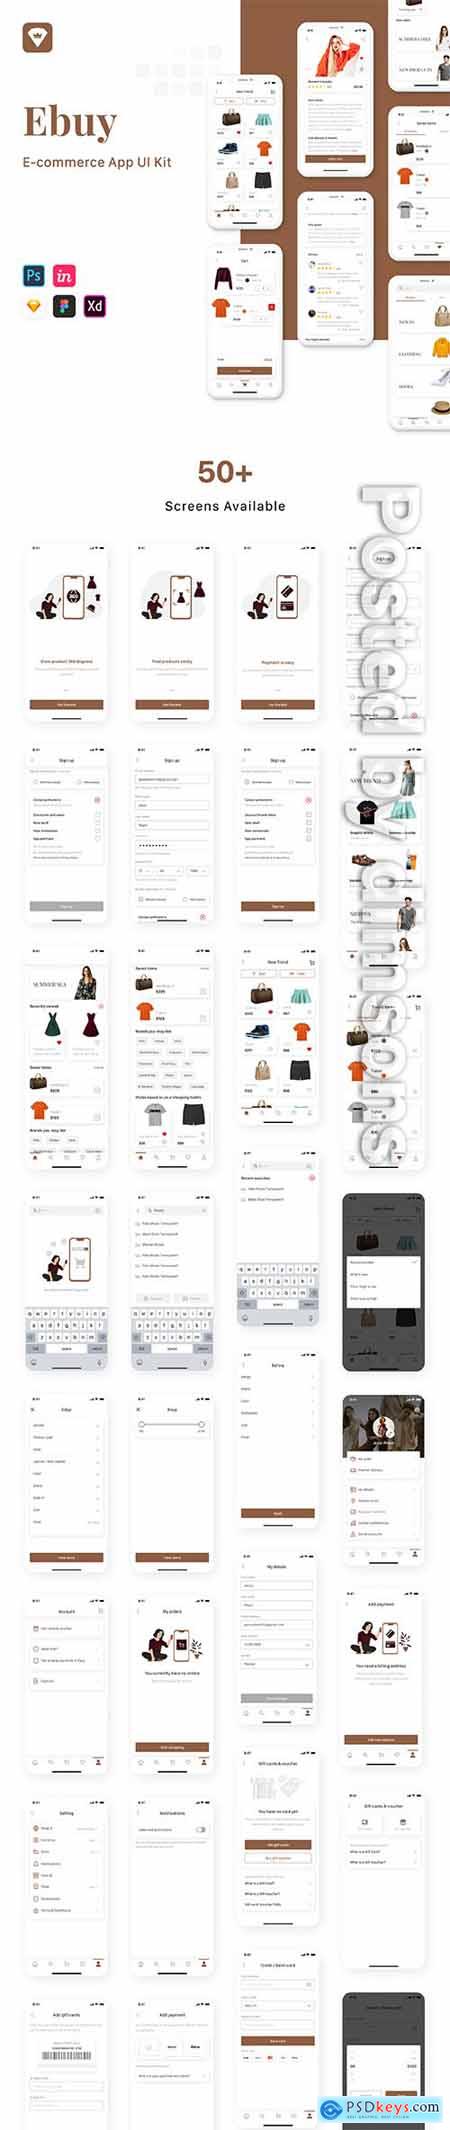 Ebuy - E-commerce App UI Kit